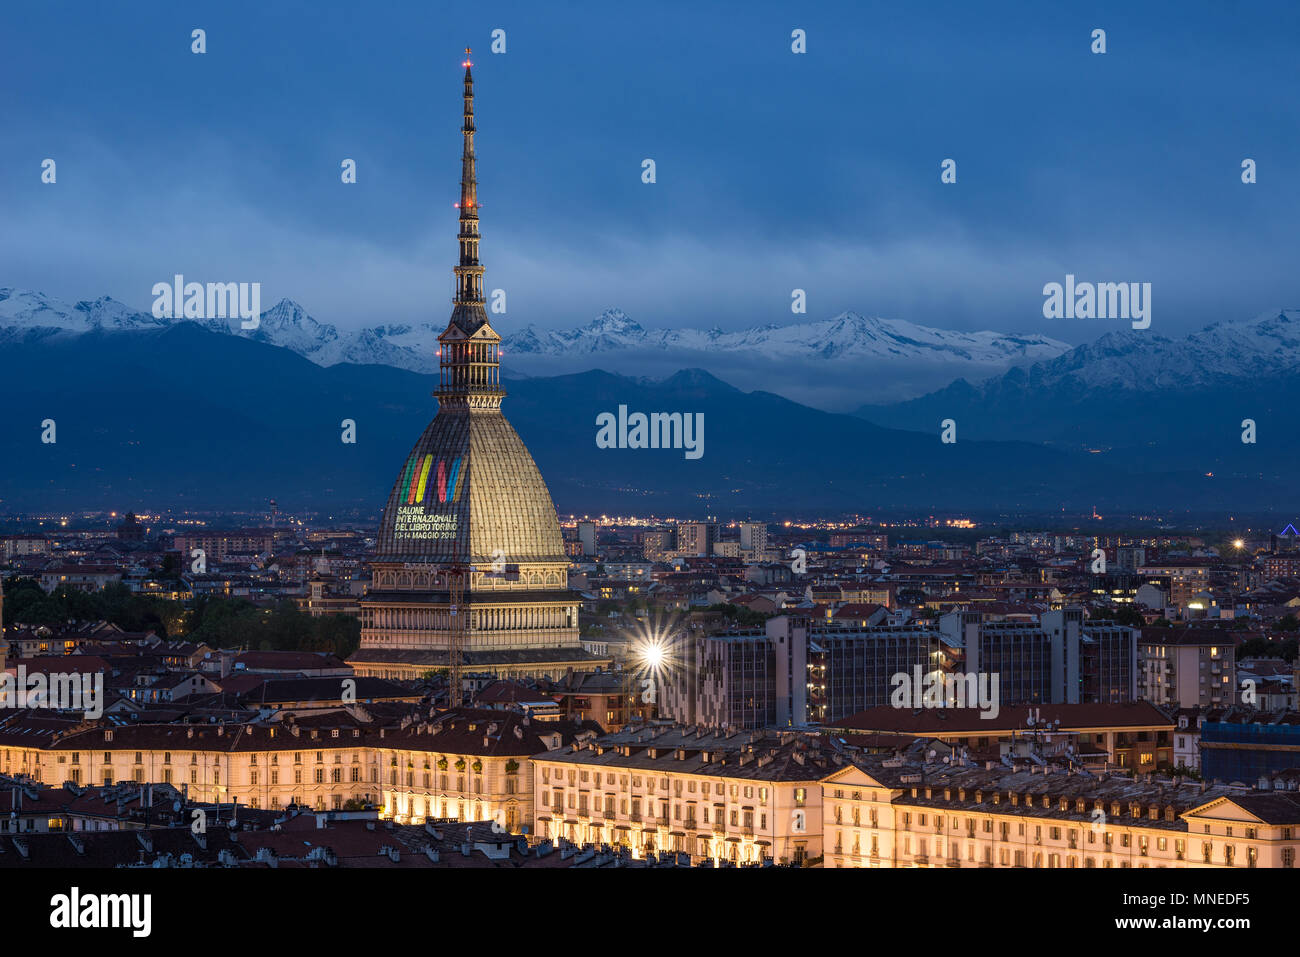 Torino, Italia - 14 de mayo de 2018: Turín skyline al atardecer, panorámica del paisaje urbano con la Mole Antonelliana mostrando 'Feria Internacional del Libro 2018" signo. Scénic Foto de stock